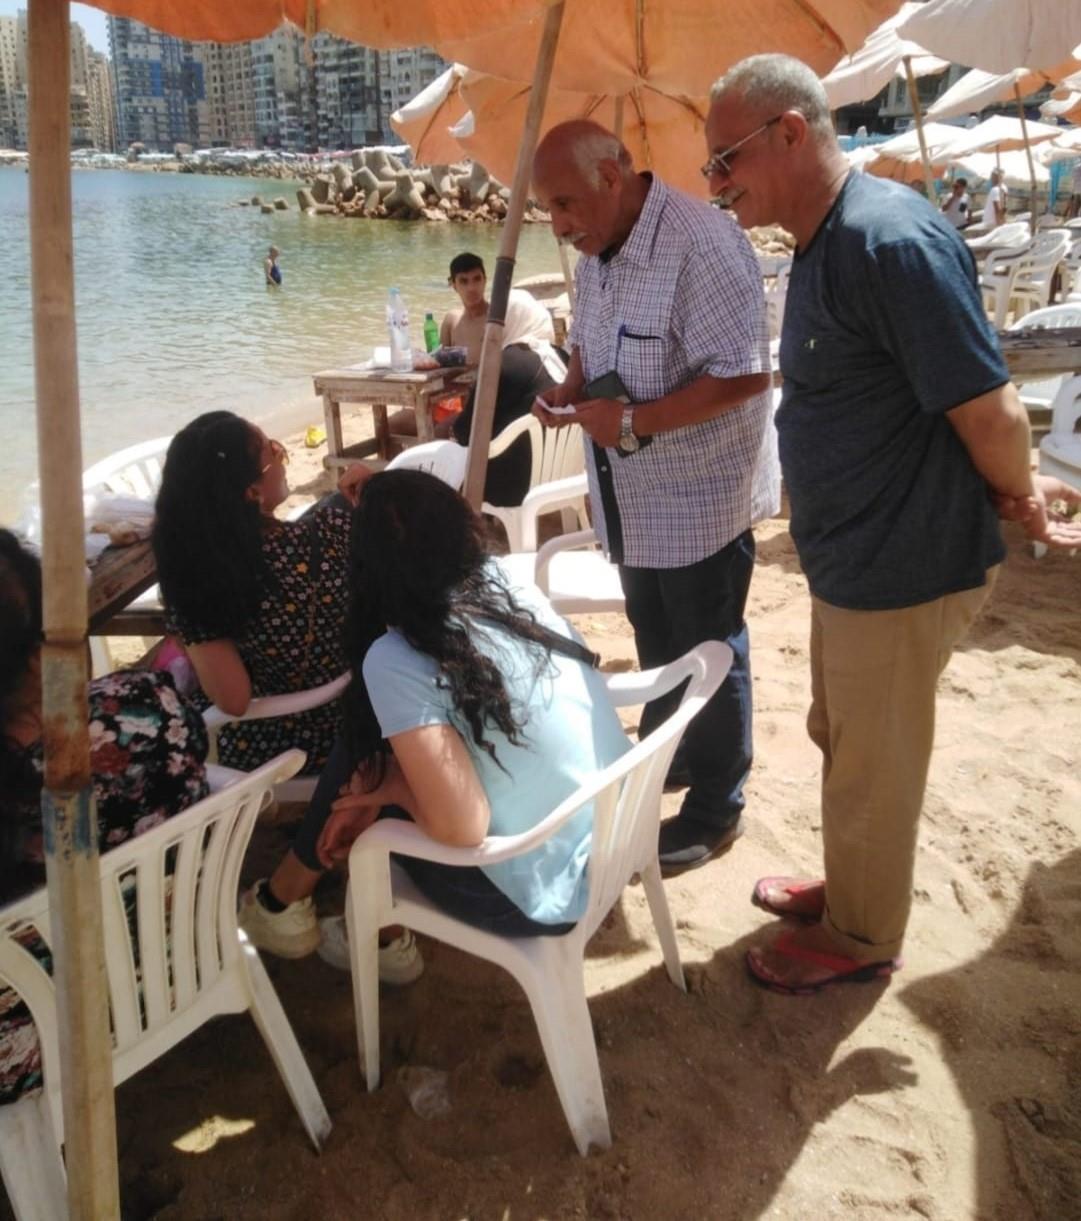 دخول ذوي الهمم بالمجان.. إحكام السيطرة على شواطئ الإسكندرية في العيد| صور